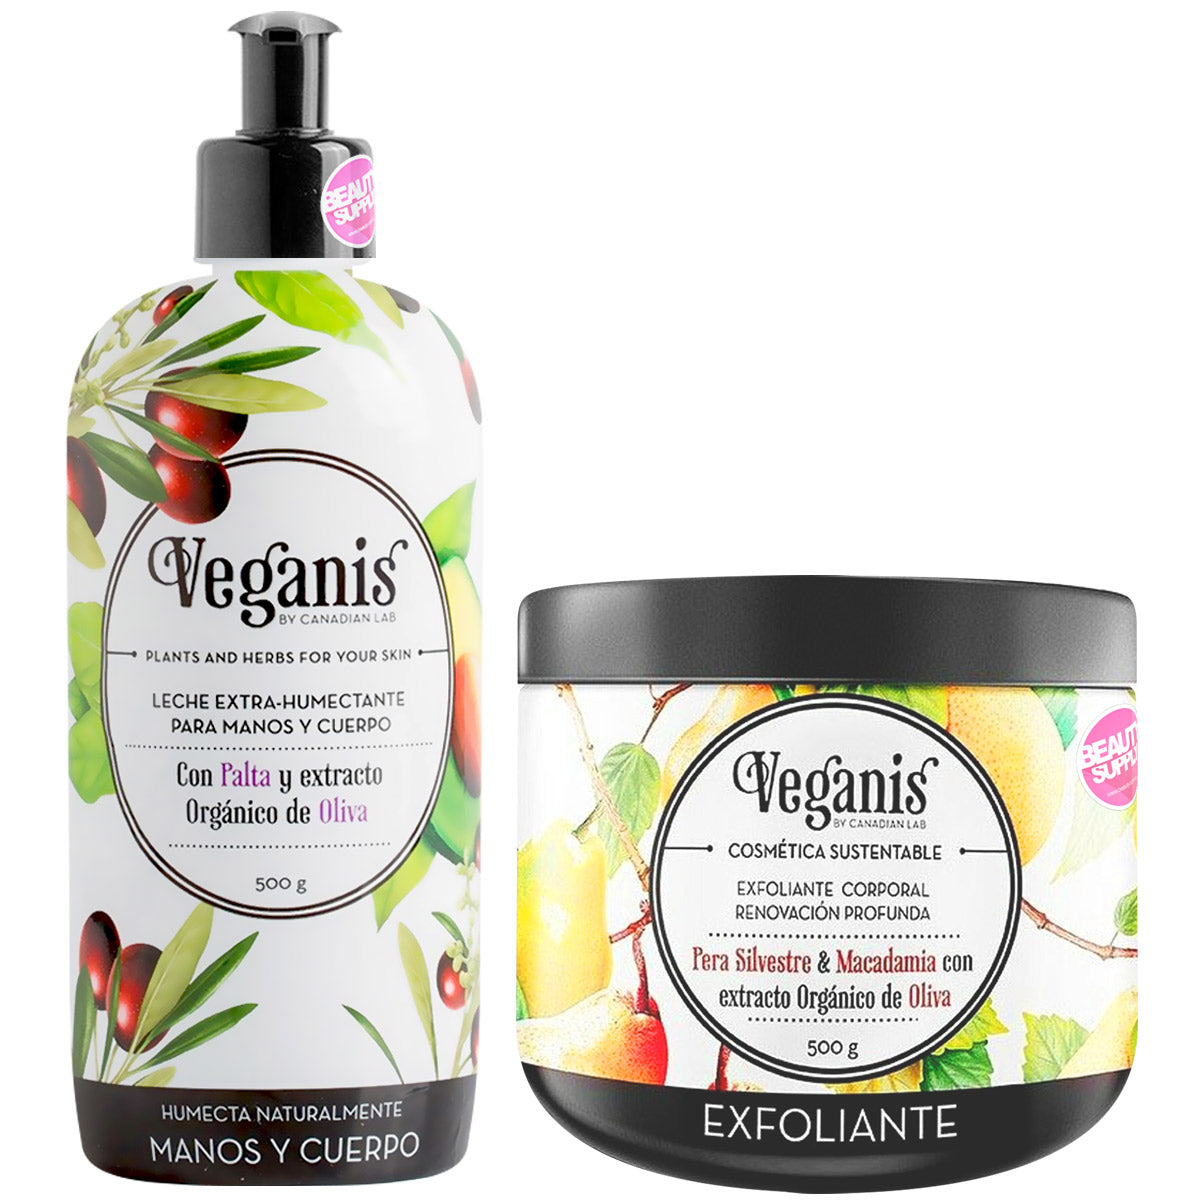 Pack De Leche Vegana Y Crema Exfoliante Veganis De 500gr en Beauty Supply